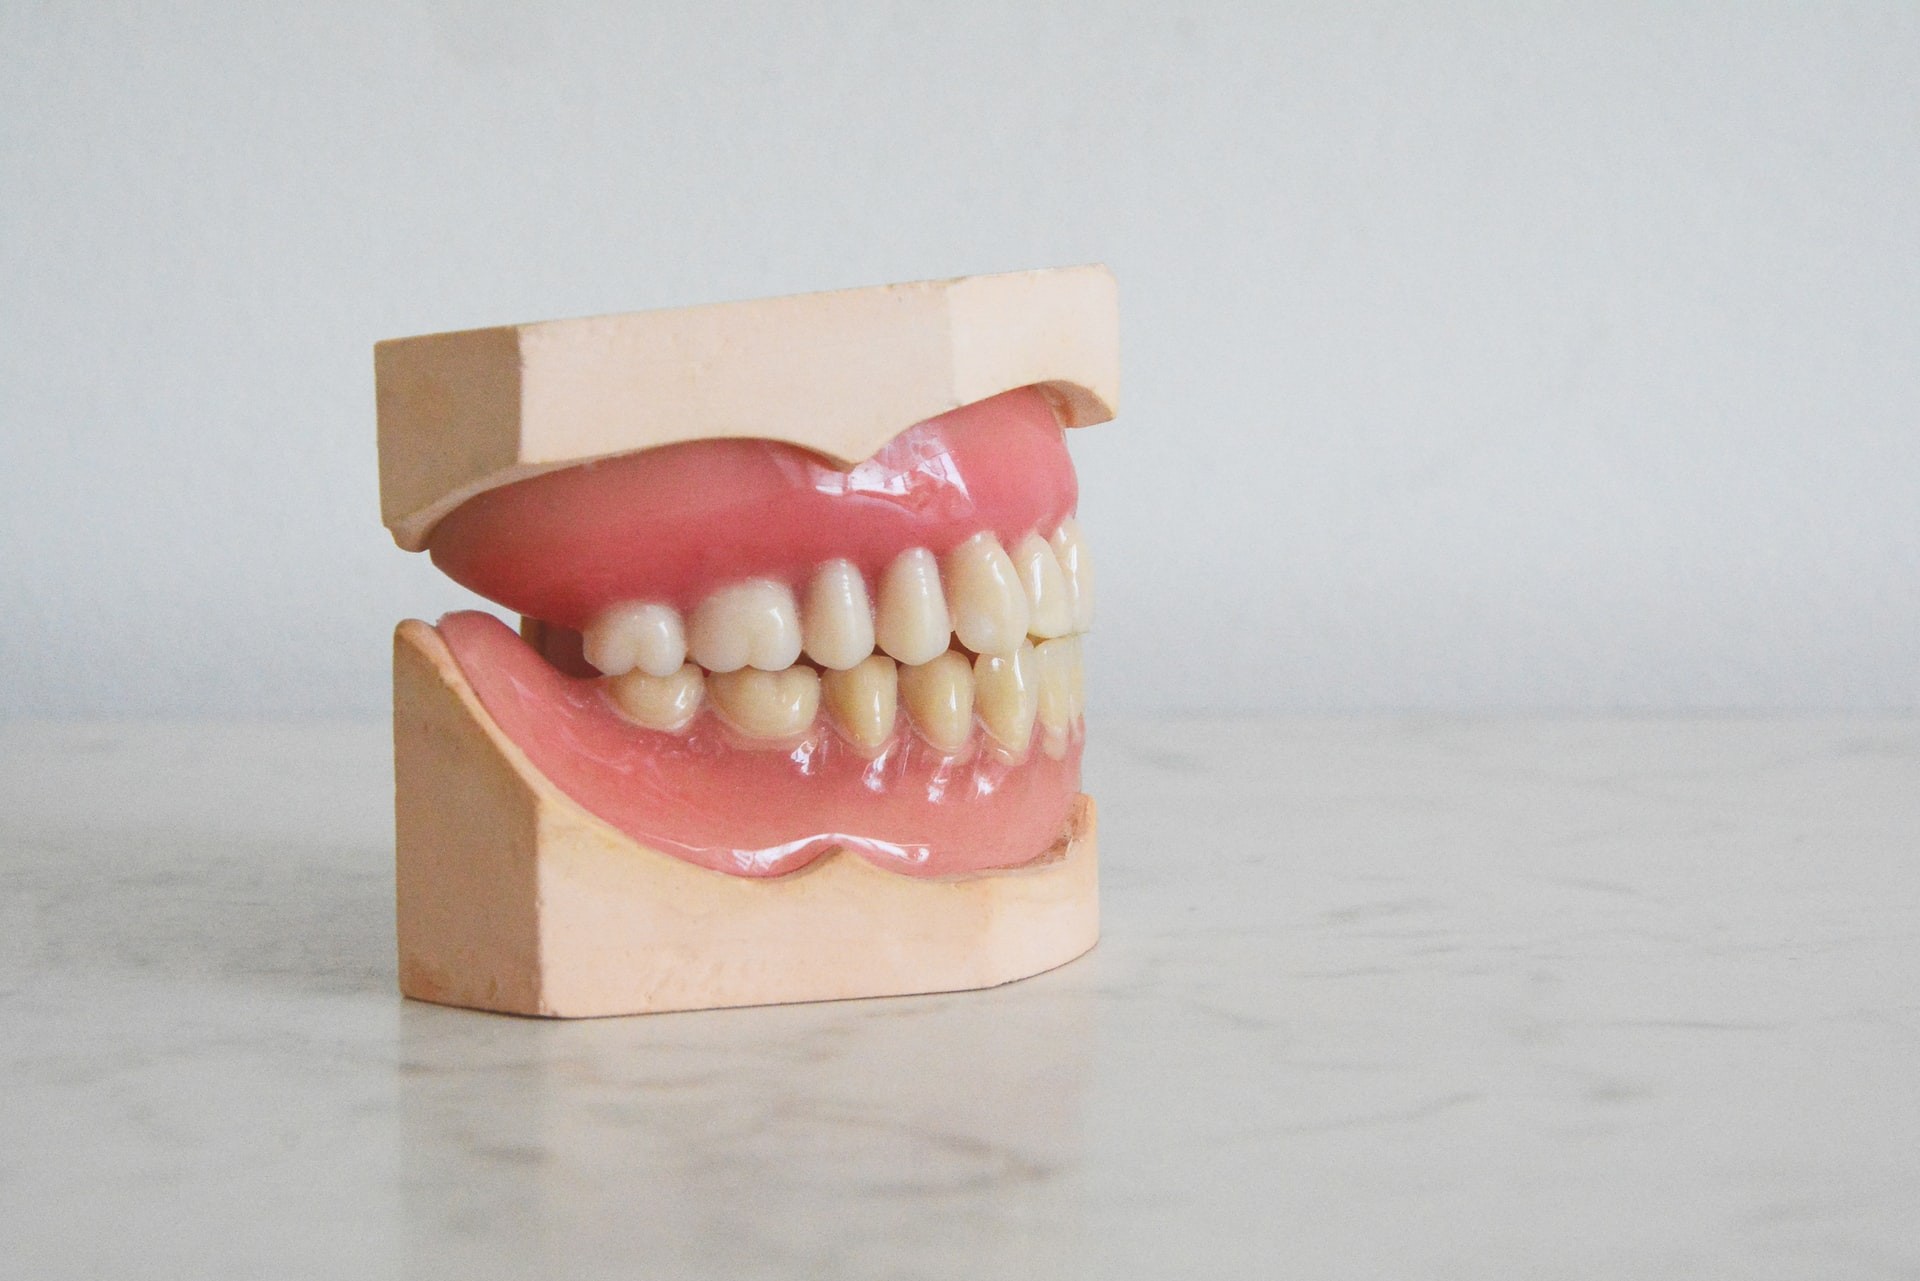 Quando os dentes da arcada superior encostam na inferior, significa que os músculos estão em contração. (Foto: Rudi Fargo/Unsplash)